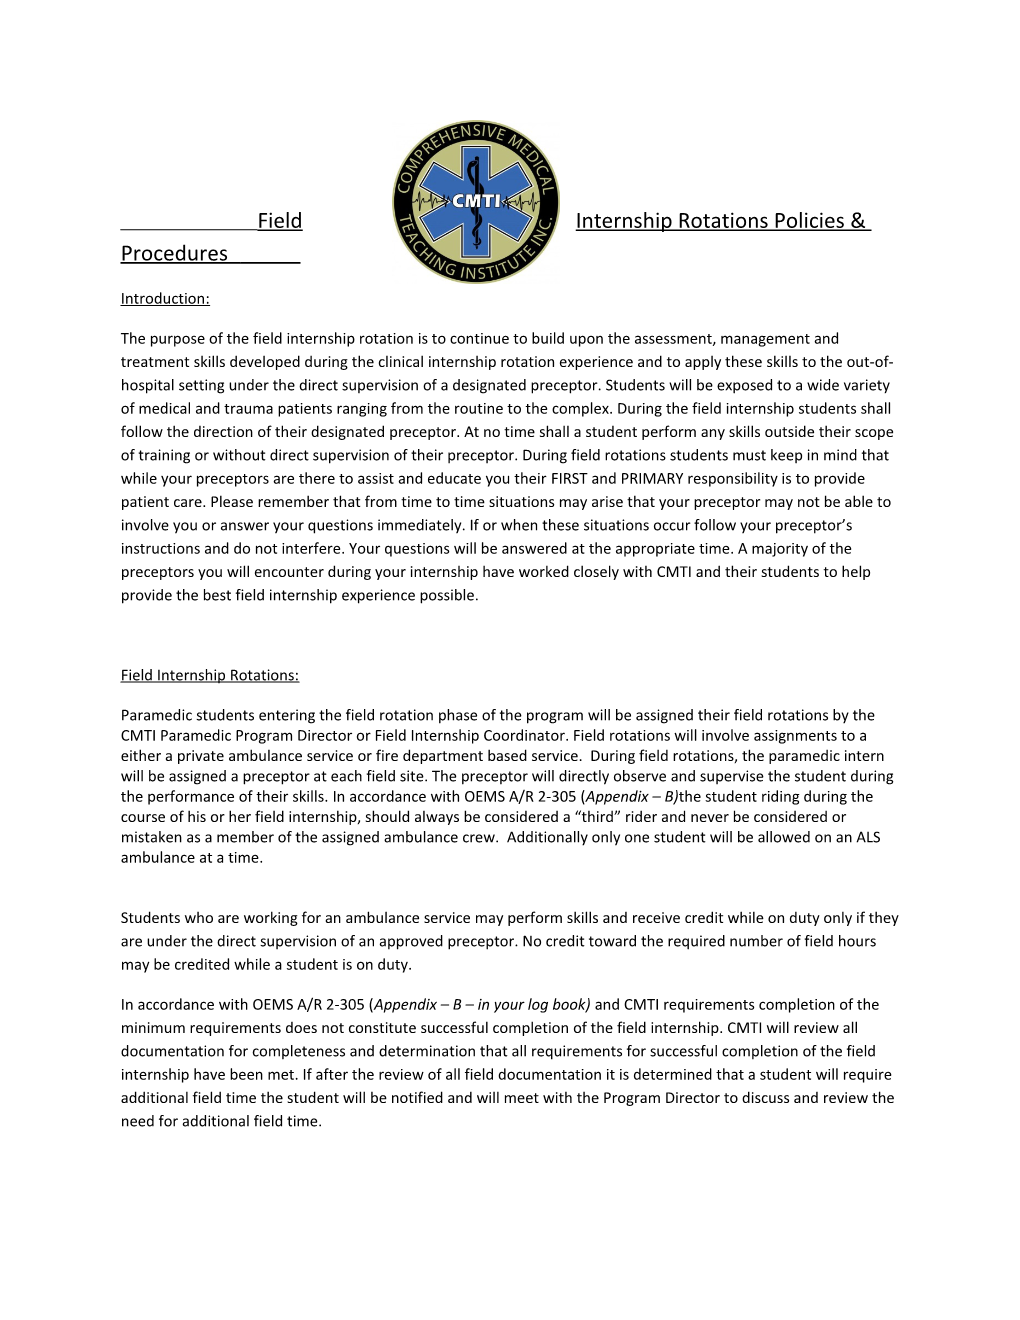 Field Internship Rotations Policies & Procedures